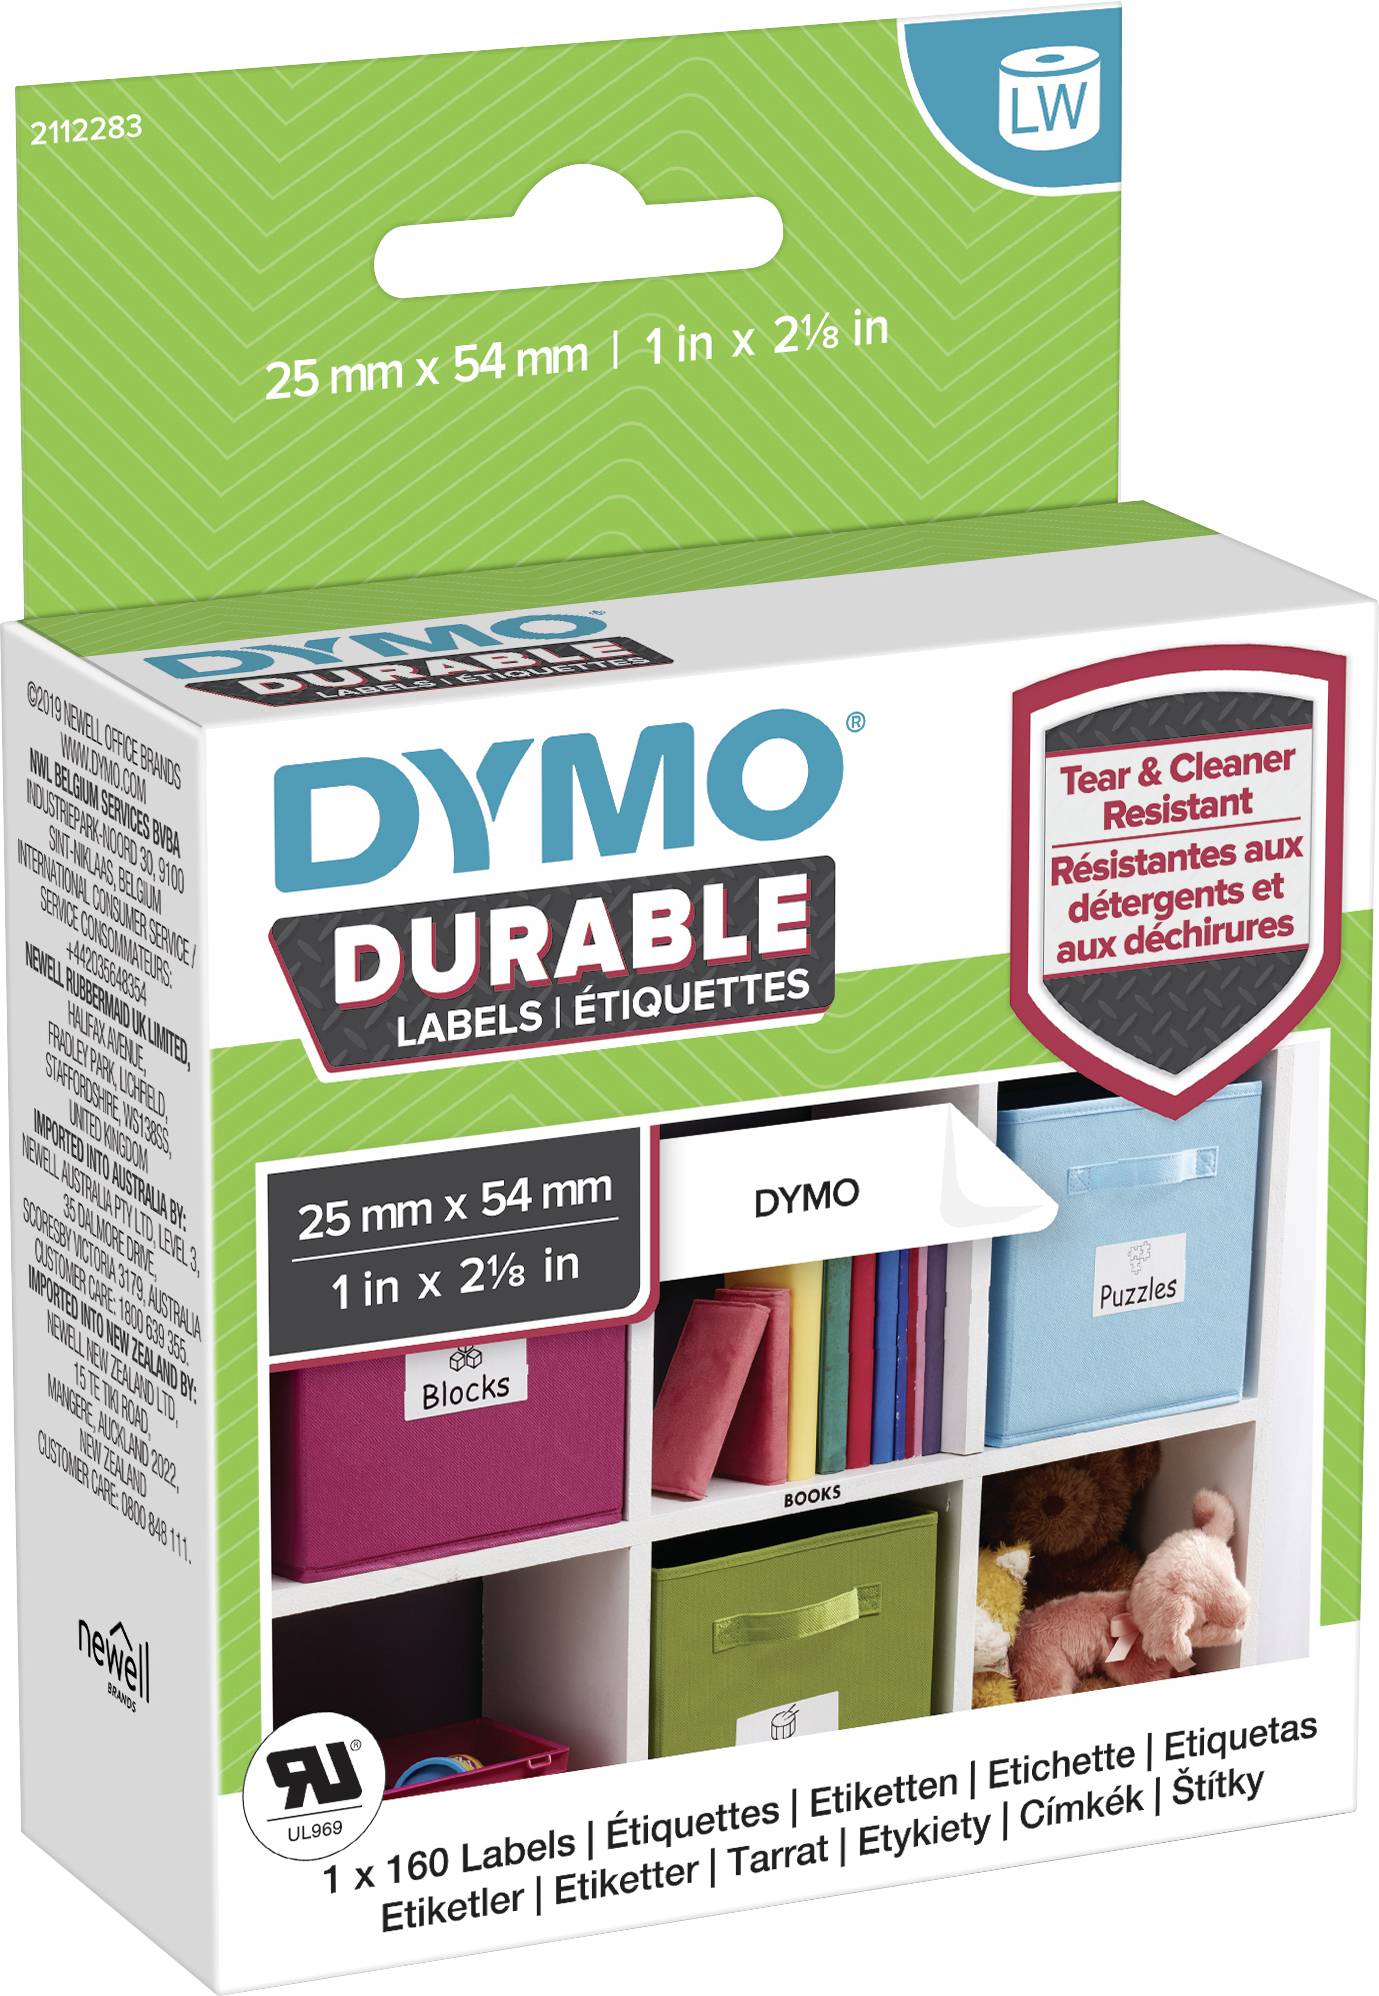 DYMO LW-Kunststoff-Etiketten, 1 Rolle a 160 Etiketten